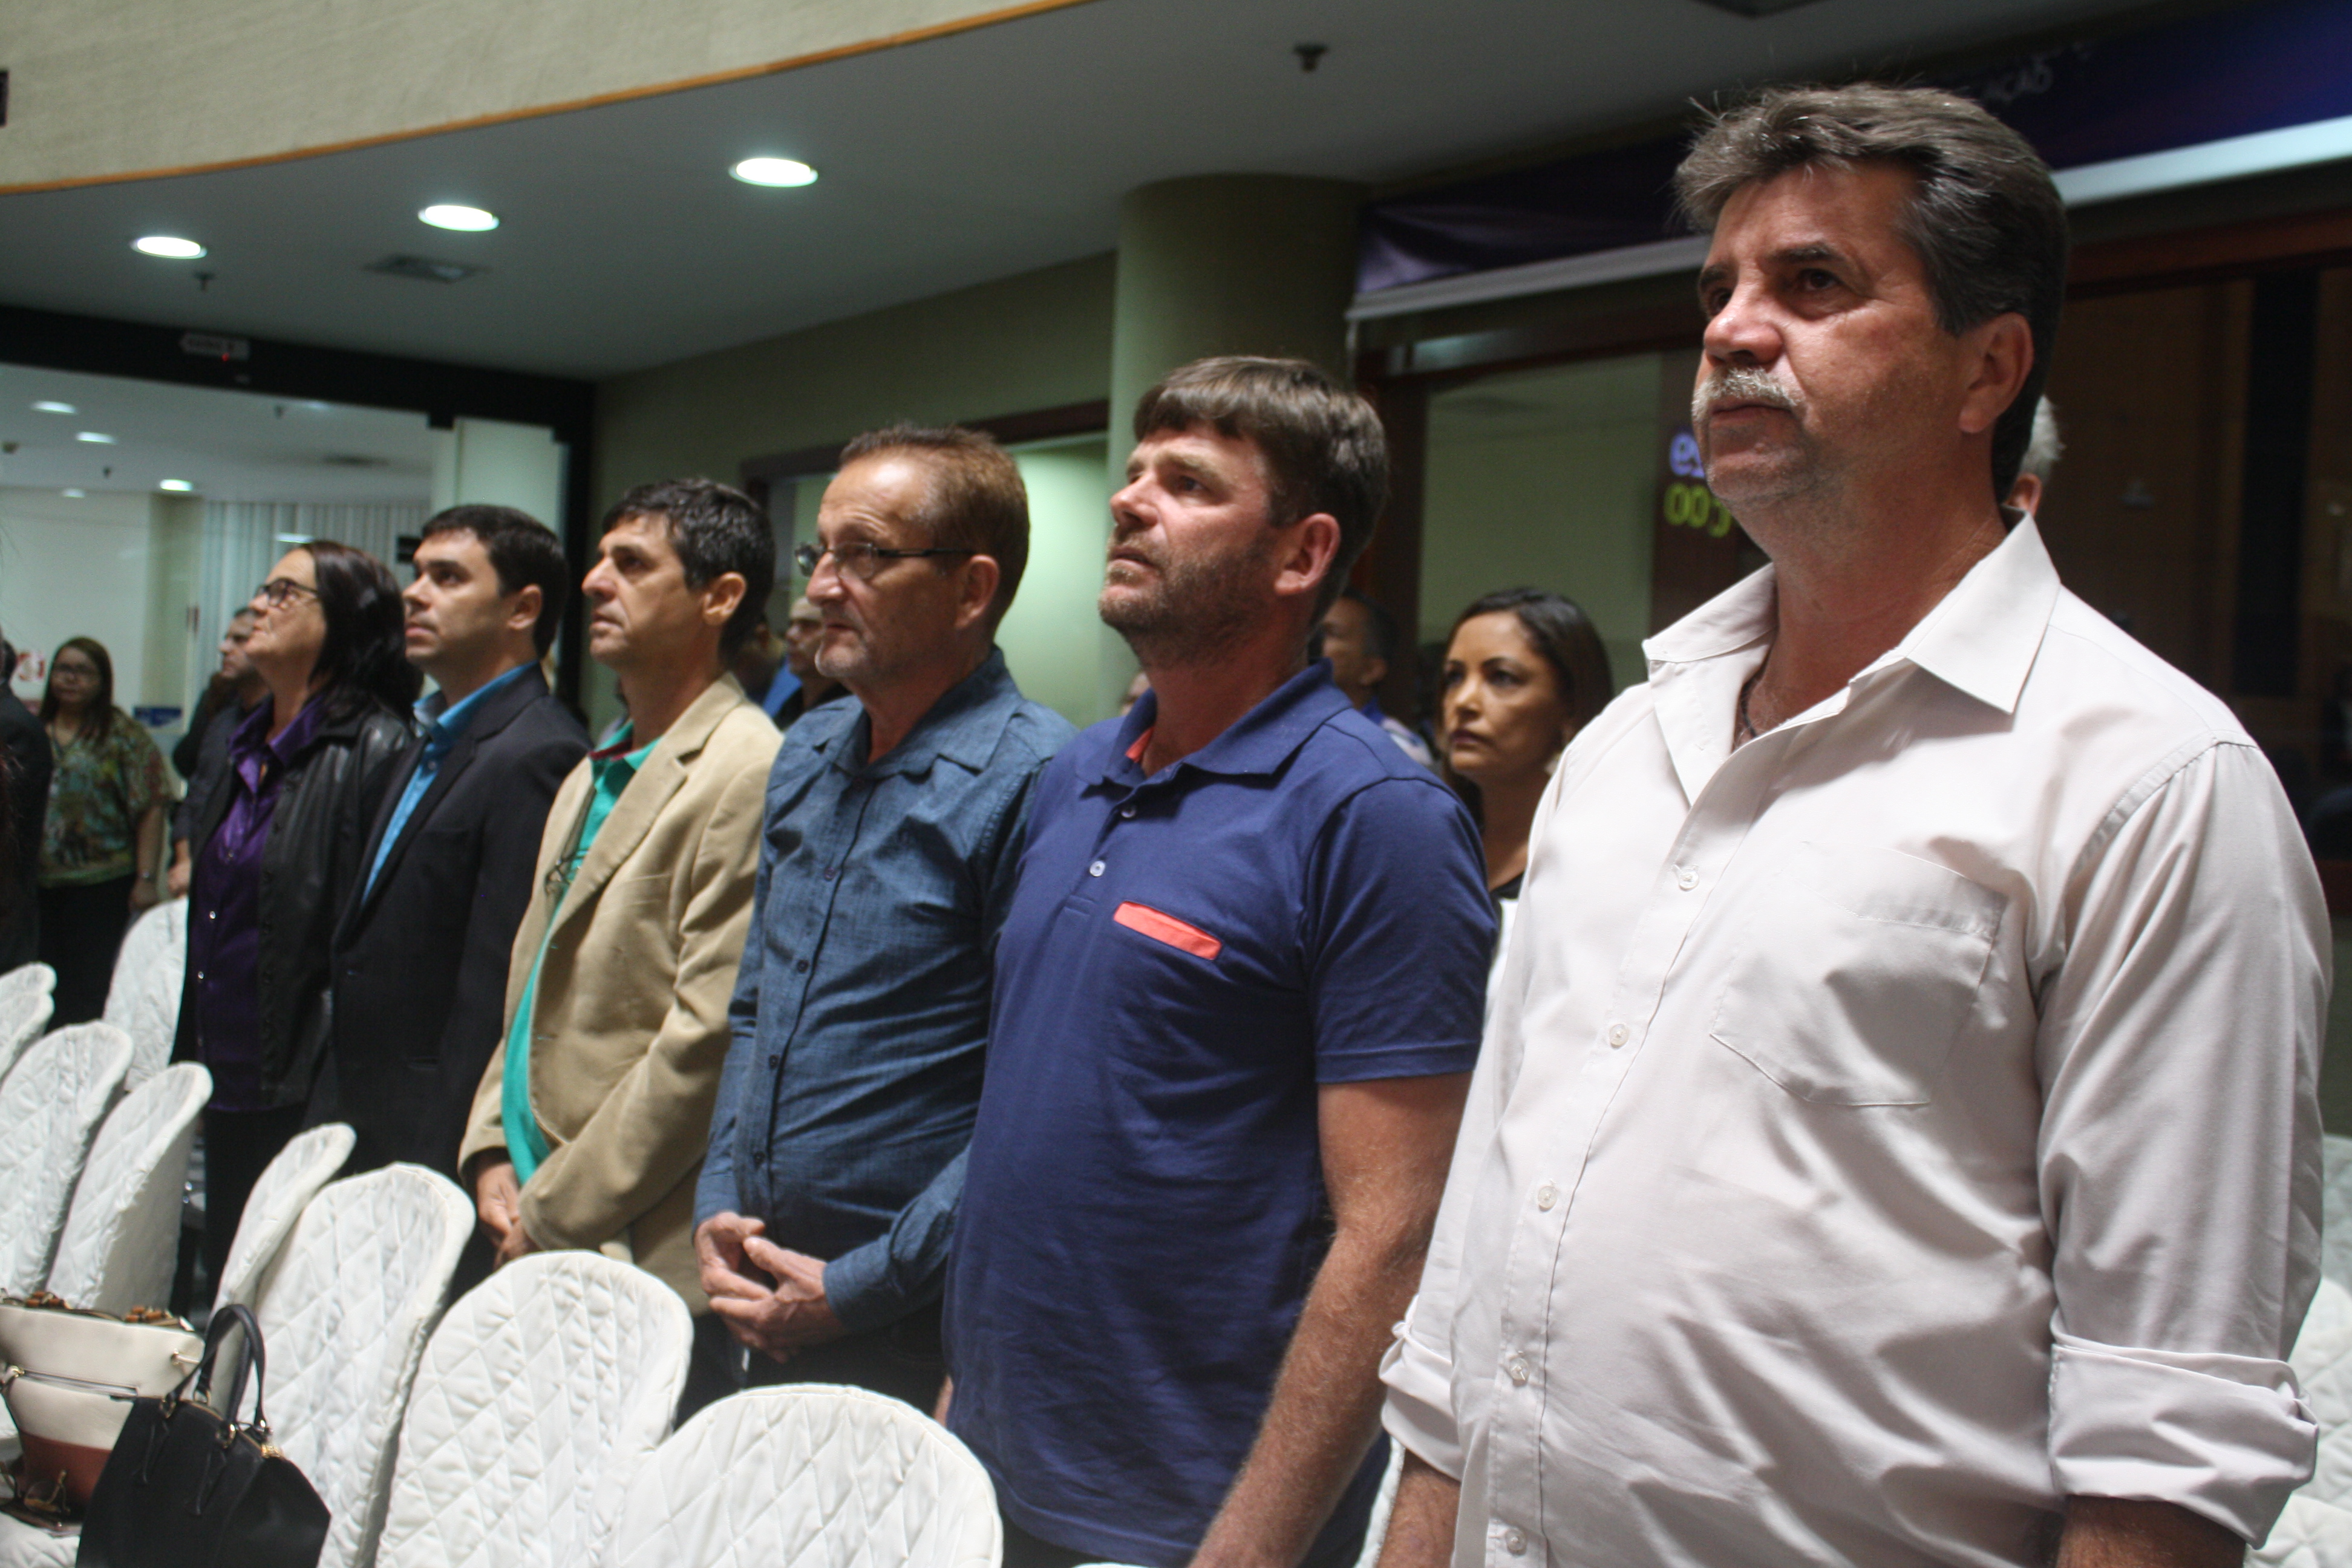 Vereadores participaram da Sessão Solene em comemoração ao dia do vereador na Assembleia Legislativa